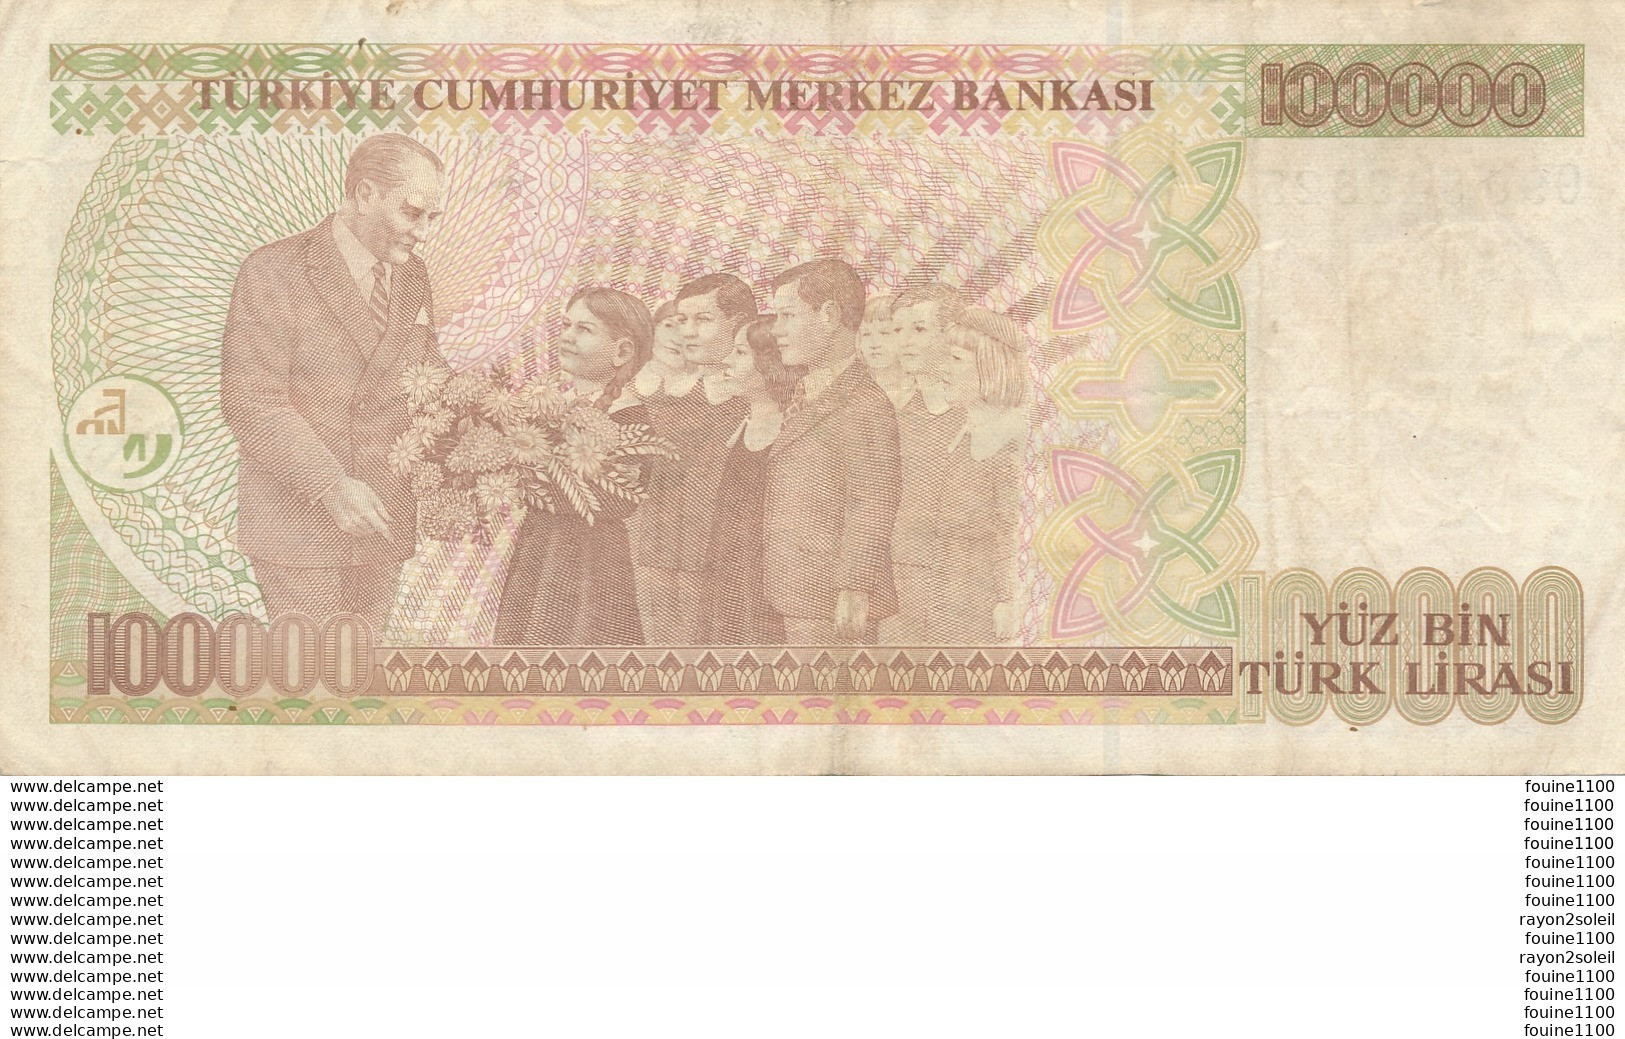 Billet De Banque  Turquie   Turkiye  100000 Turk Lirasi - Turquie